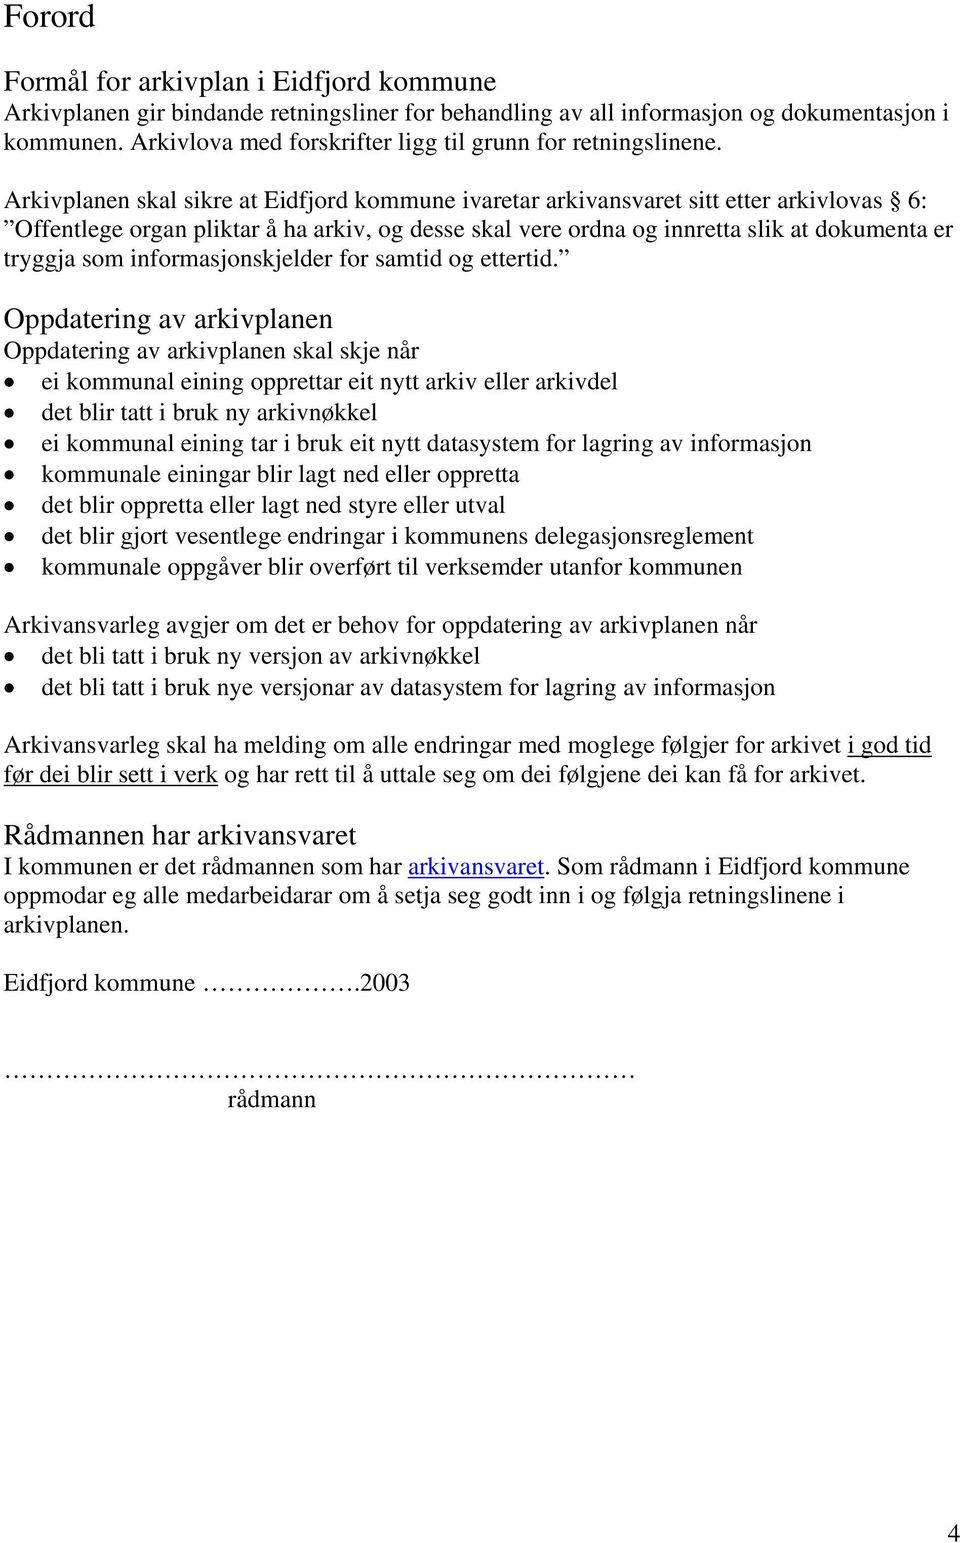 Arkivplanen skal sikre at Eidfjord kommune ivaretar arkivansvaret sitt etter arkivlovas 6: Offentlege organ pliktar å ha arkiv, og desse skal vere ordna og innretta slik at dokumenta er tryggja som